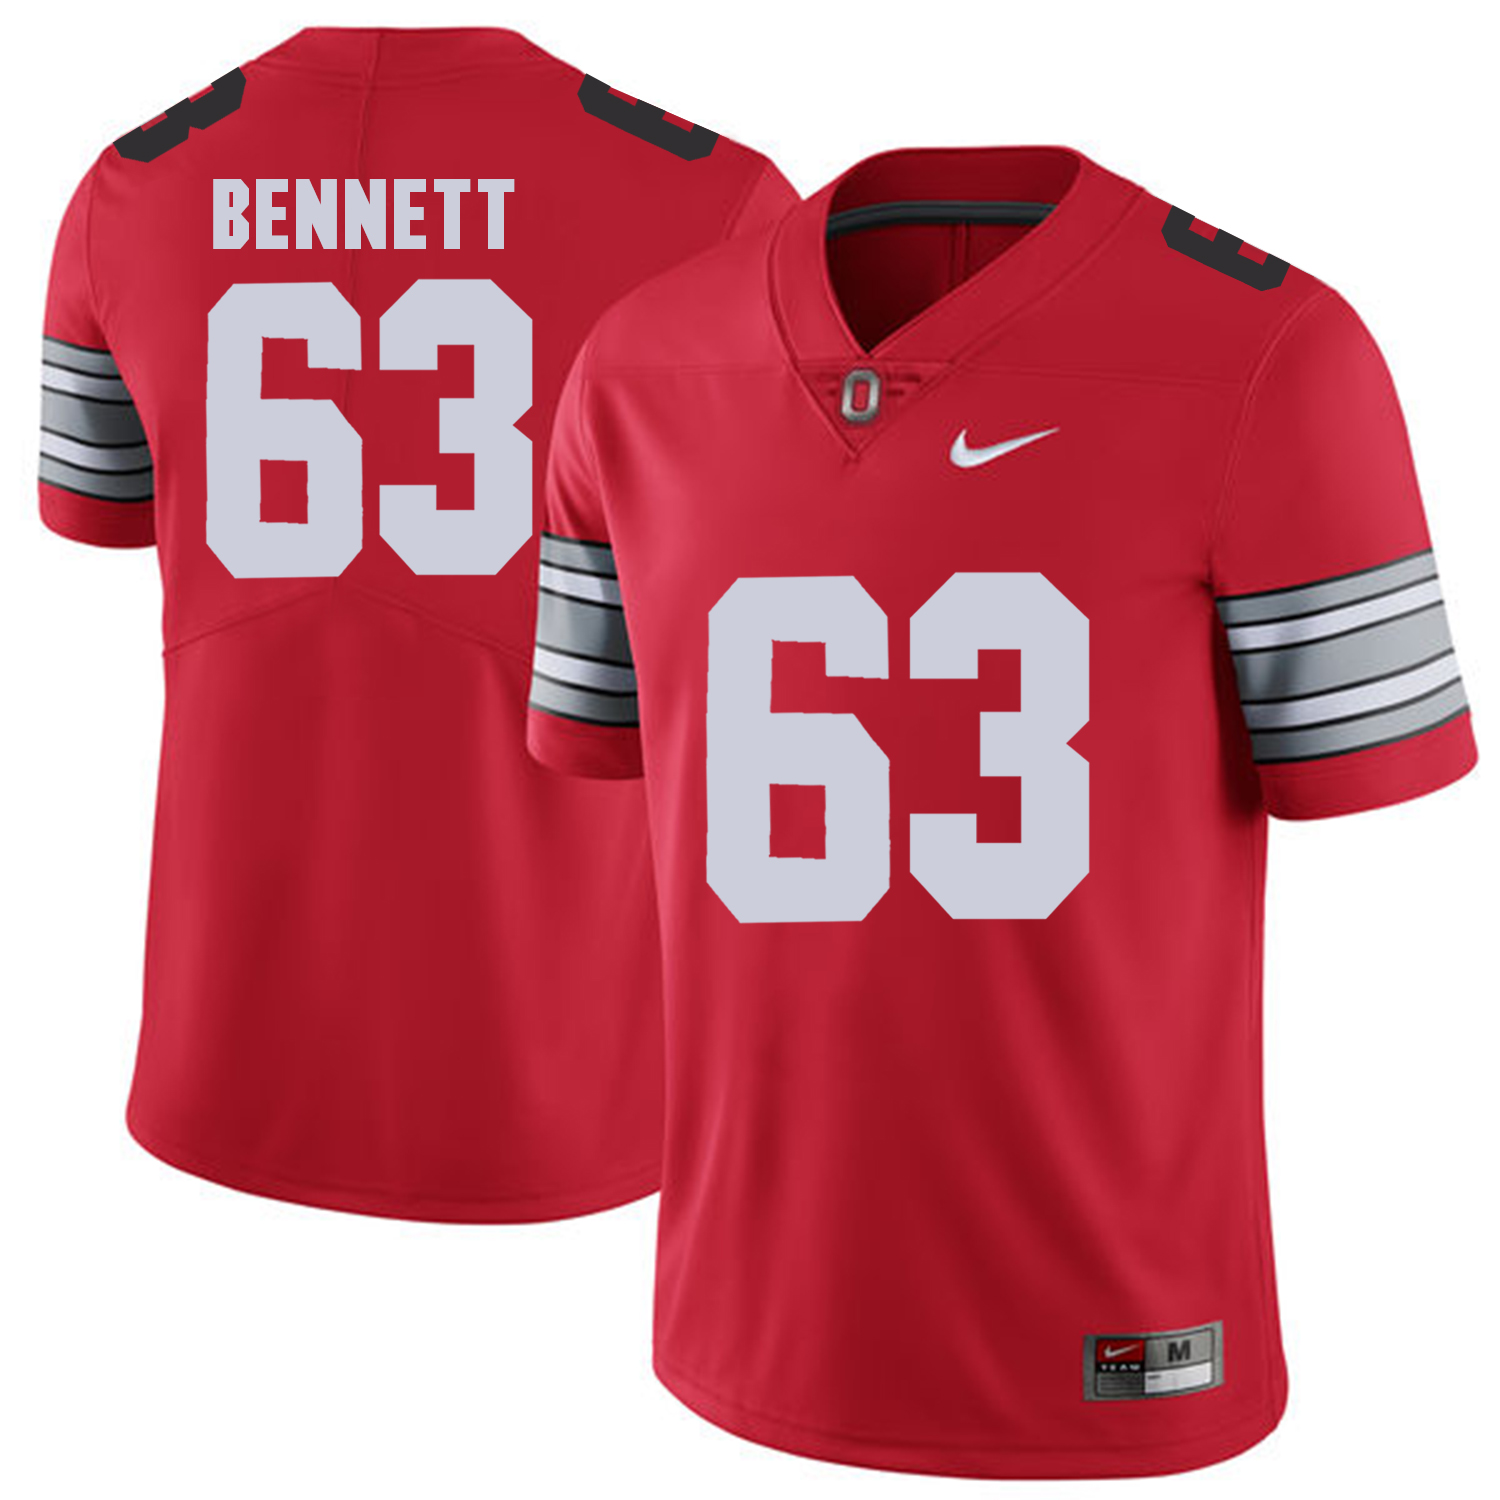 Men Ohio State 63 Bennett Red Customized NCAA Jerseys